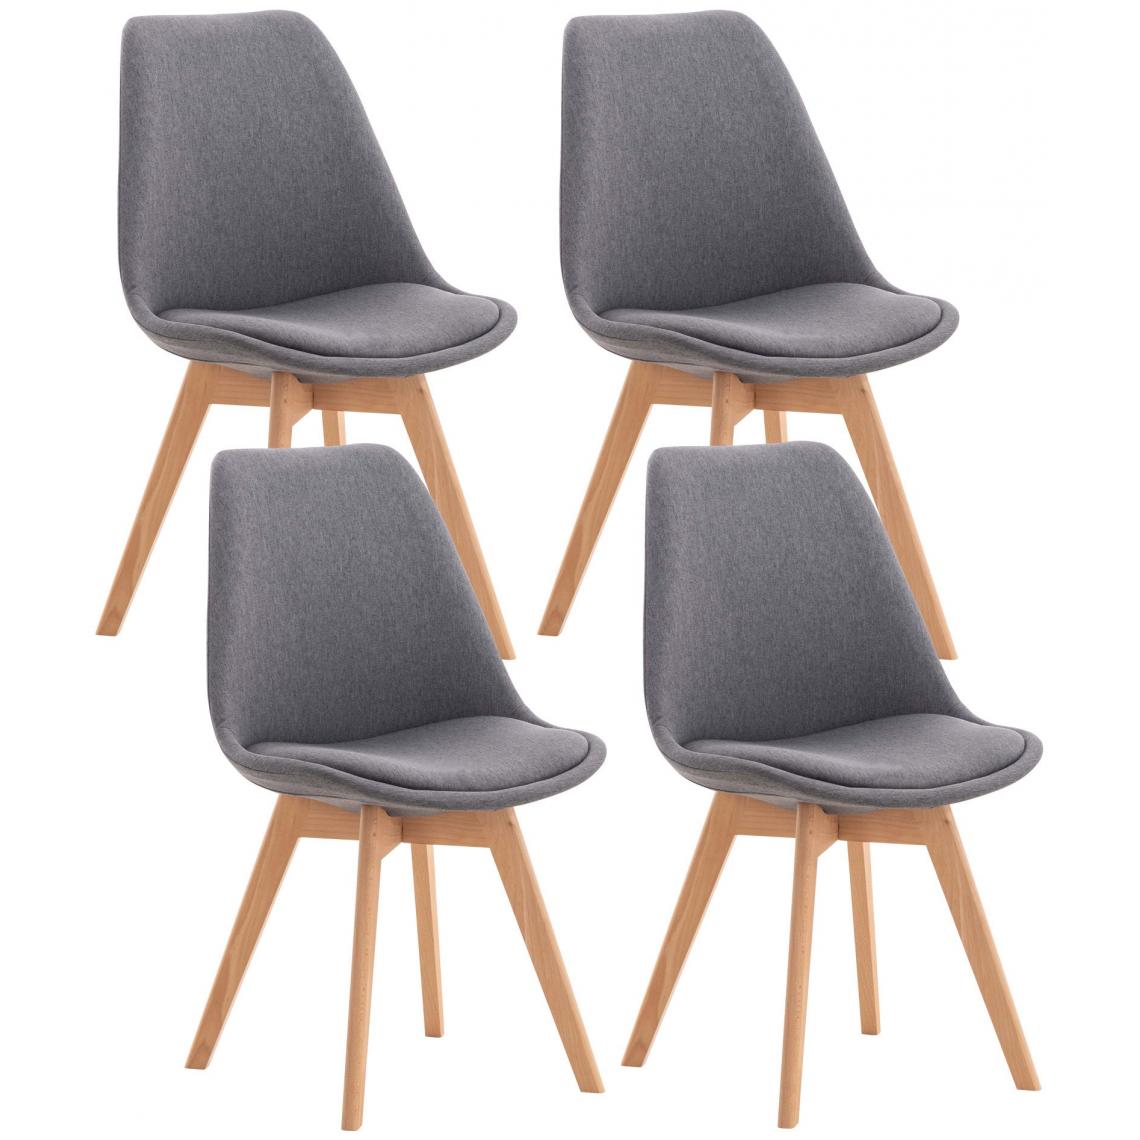 Decoshop26 - Lot de 4 chaises de salle à manger cuisine bureau style scandinave en tissu gris pieds en bois 10_0000365 - Chaises